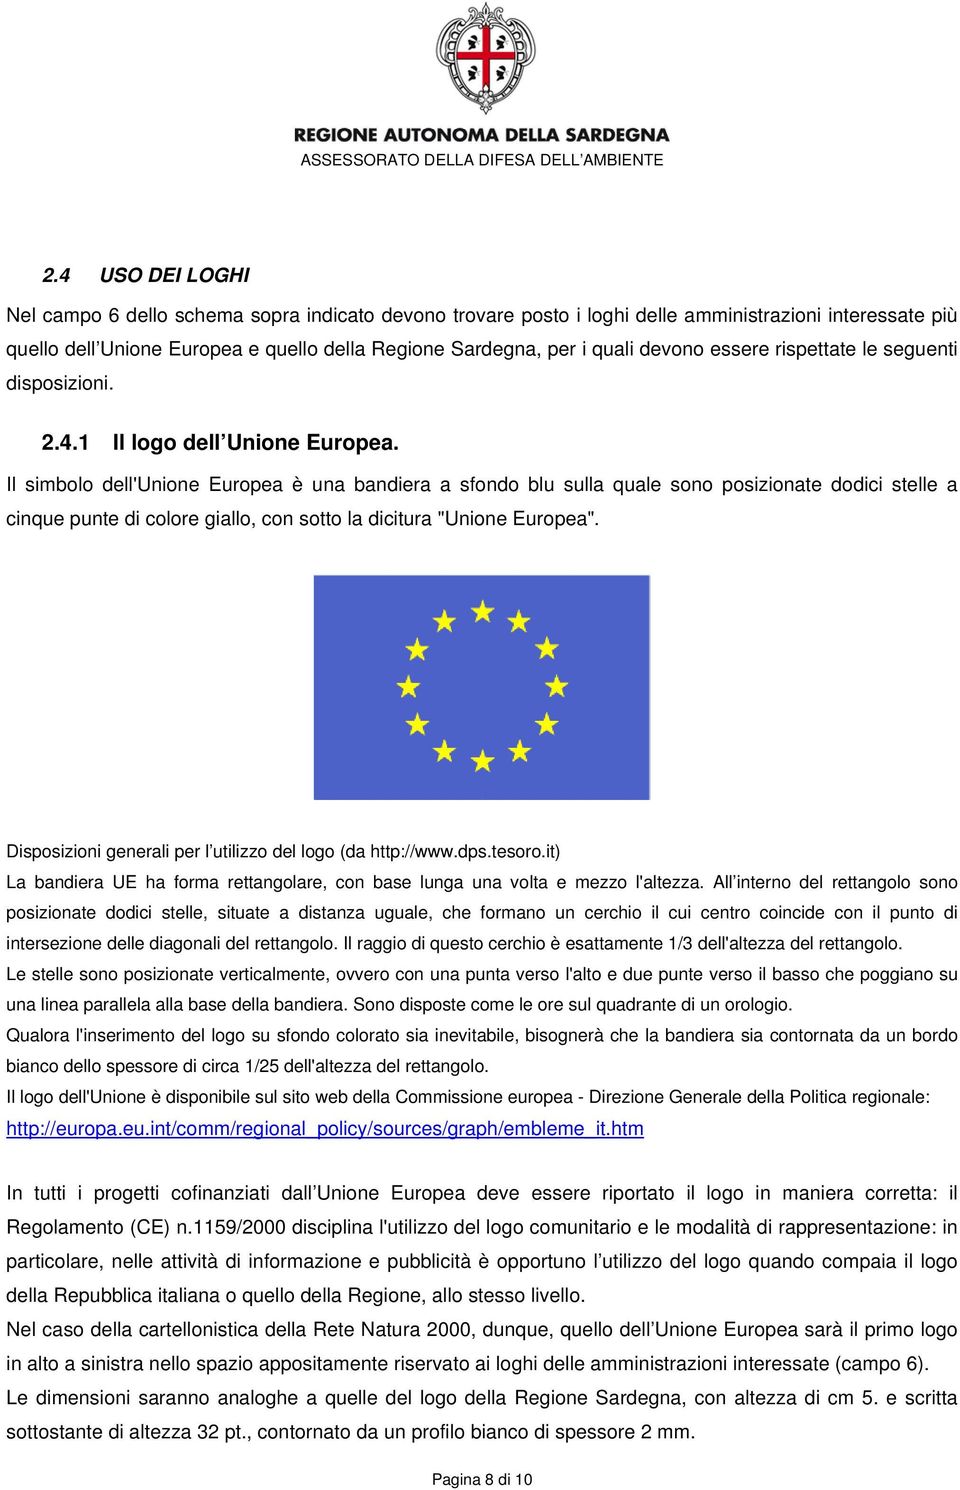 Il simbolo dell'unione Europea è una bandiera a sfondo blu sulla quale sono posizionate dodici stelle a cinque punte di colore giallo, con sotto la dicitura "Unione Europea".